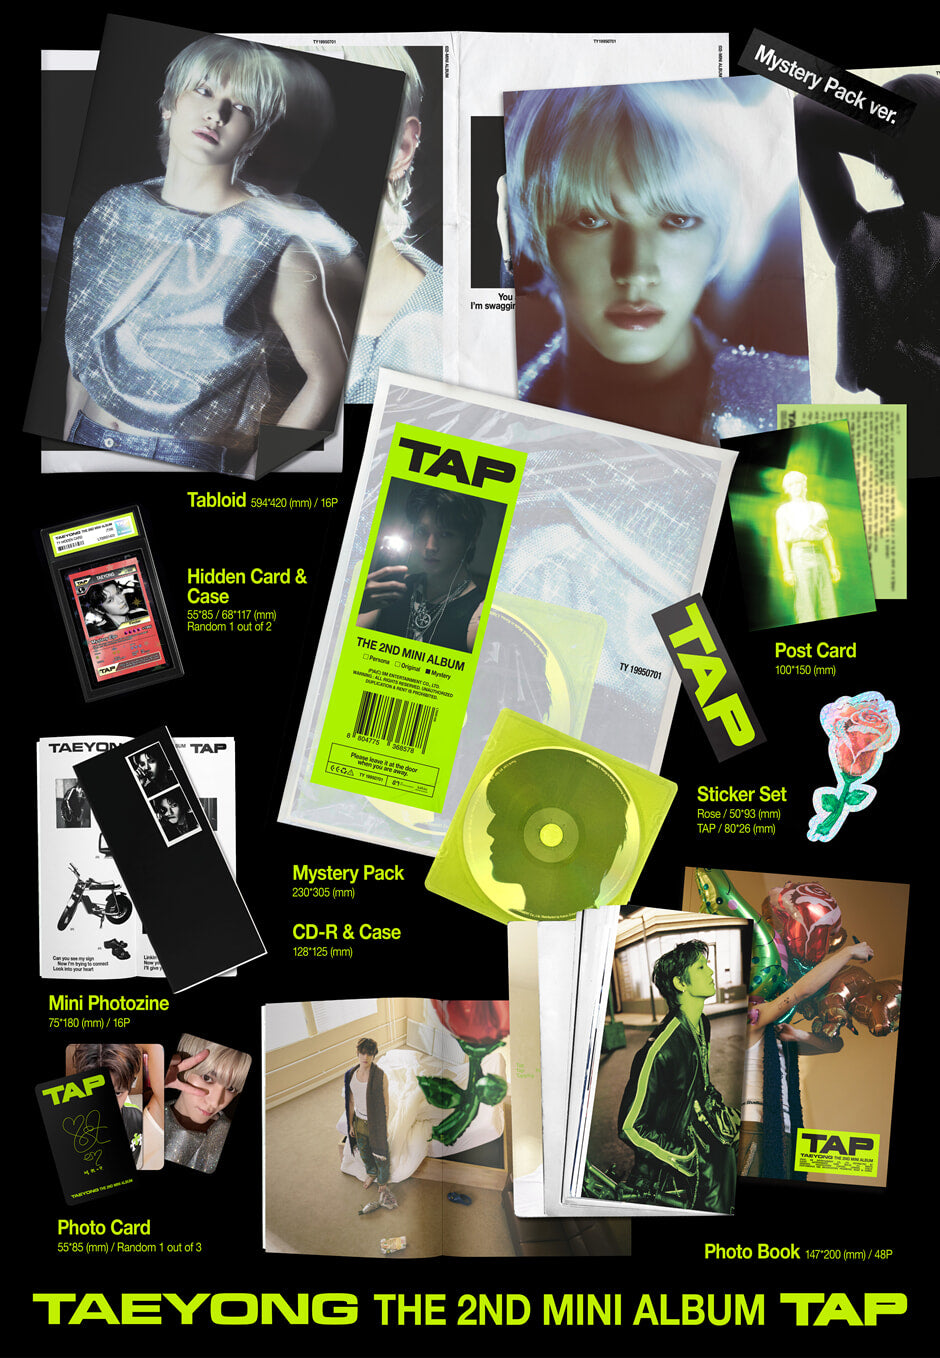 TAEYONG MINI Album Vol. 2 – TAP (Mystery Pack Ver.)